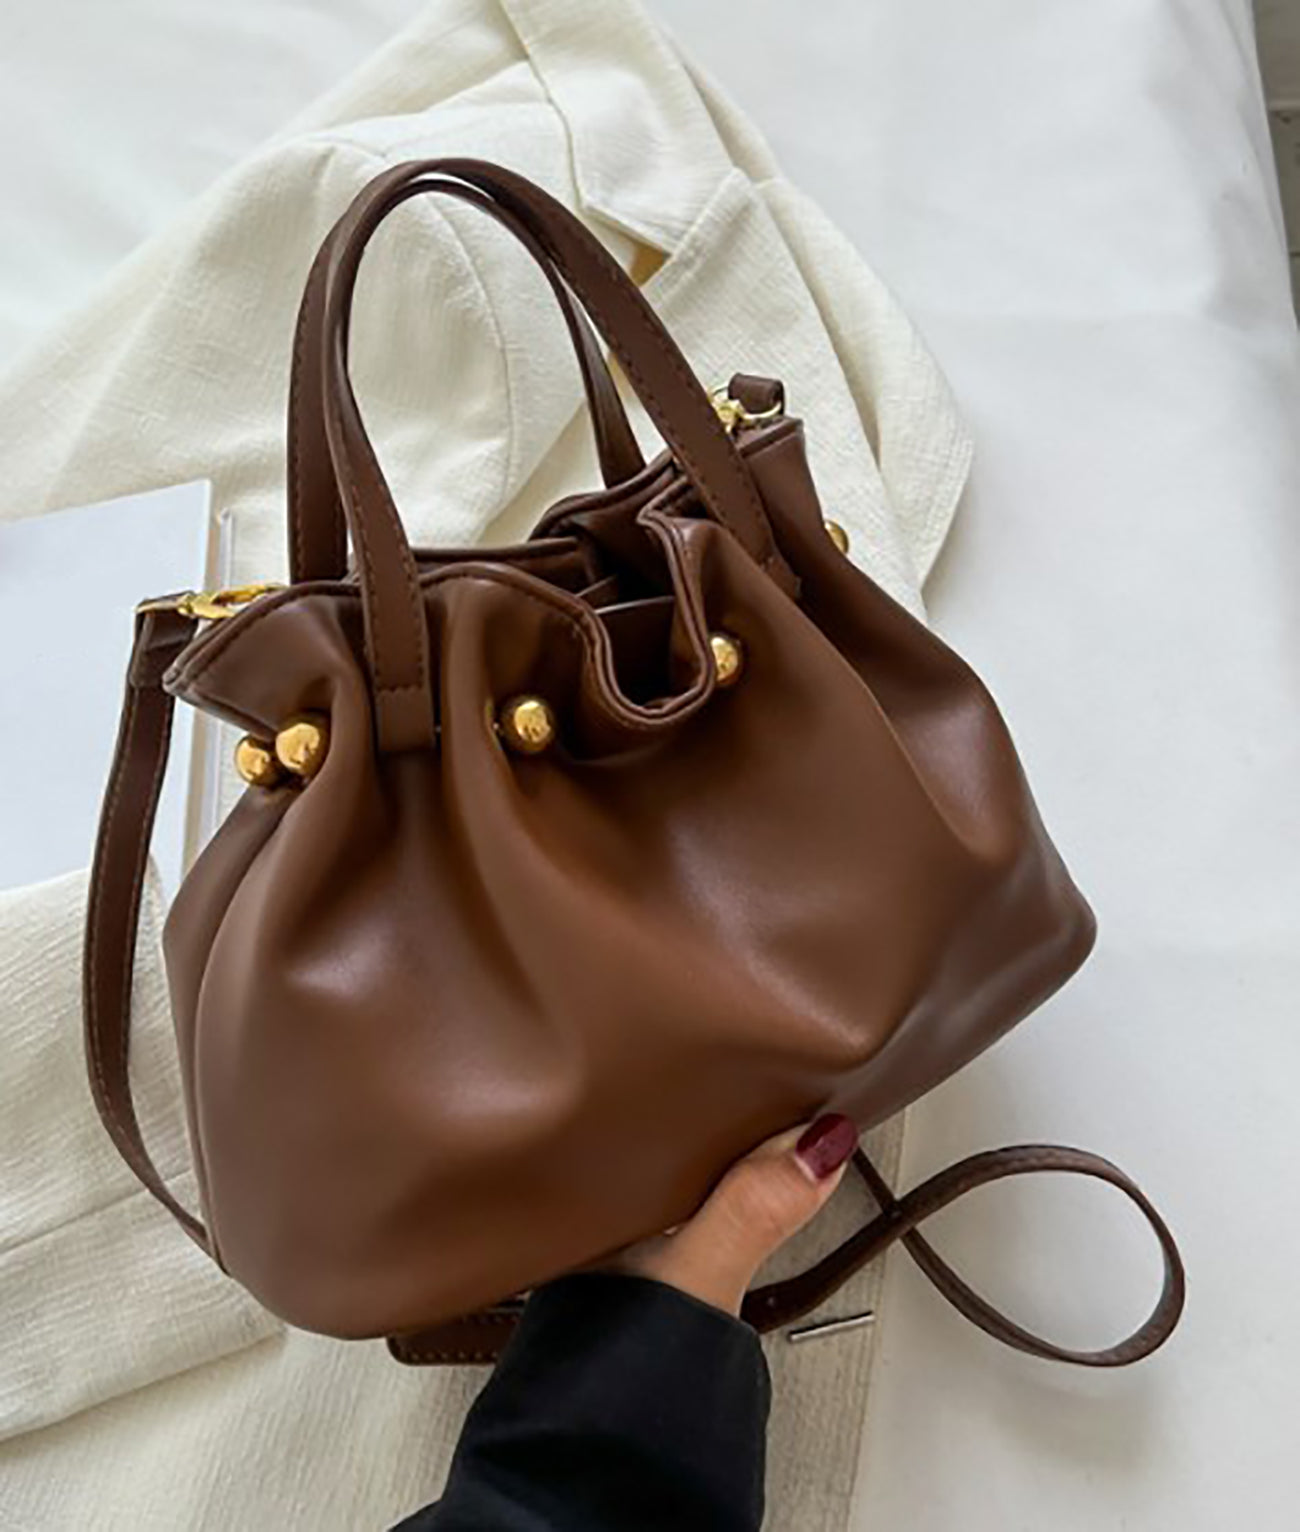 Juliet handbag